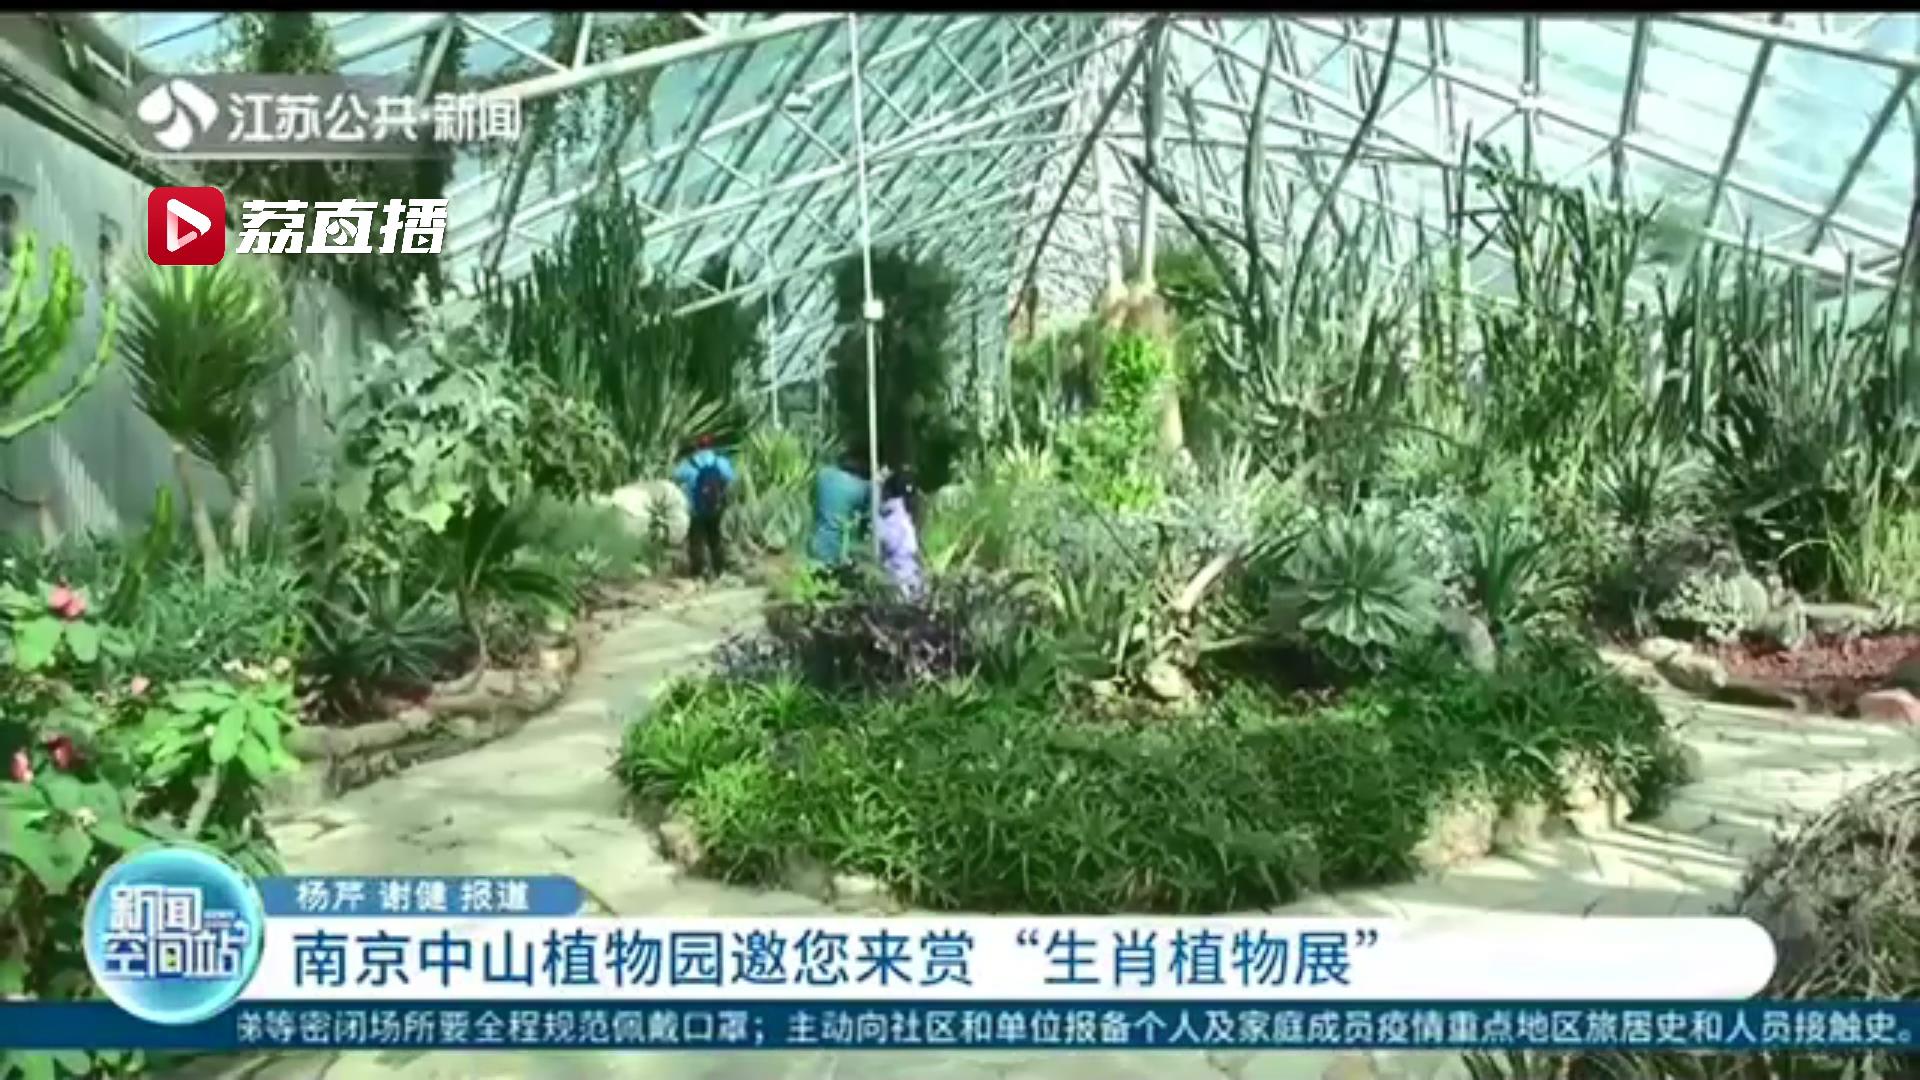 今年大不同 十二生肖植物一起登场！南京中山植物园邀您来赏“生肖植物展”